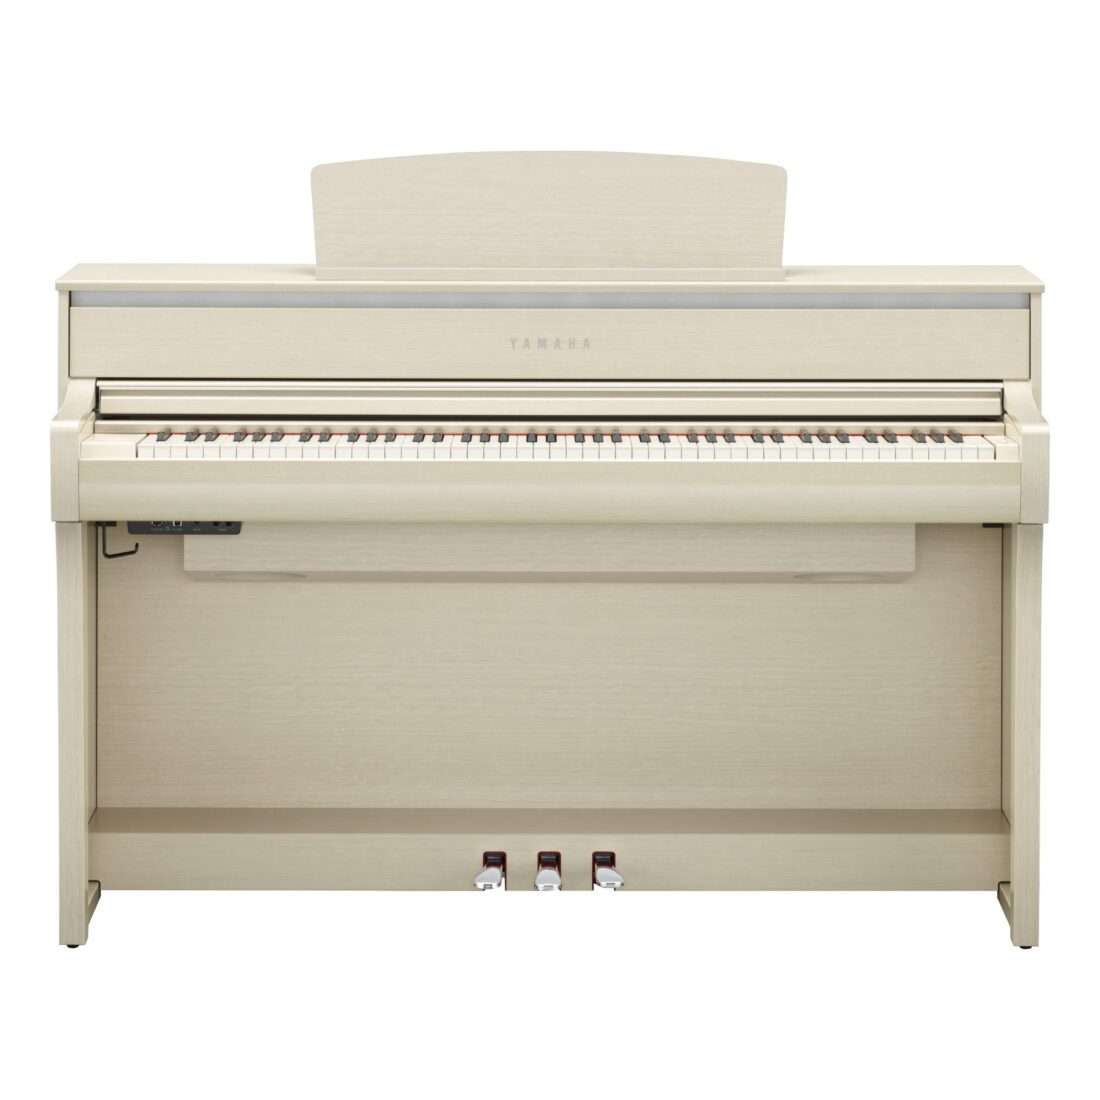 ヤマハ 電子ピアノ クラビノーバ CLP-775WA ホワイトアッシュ調 